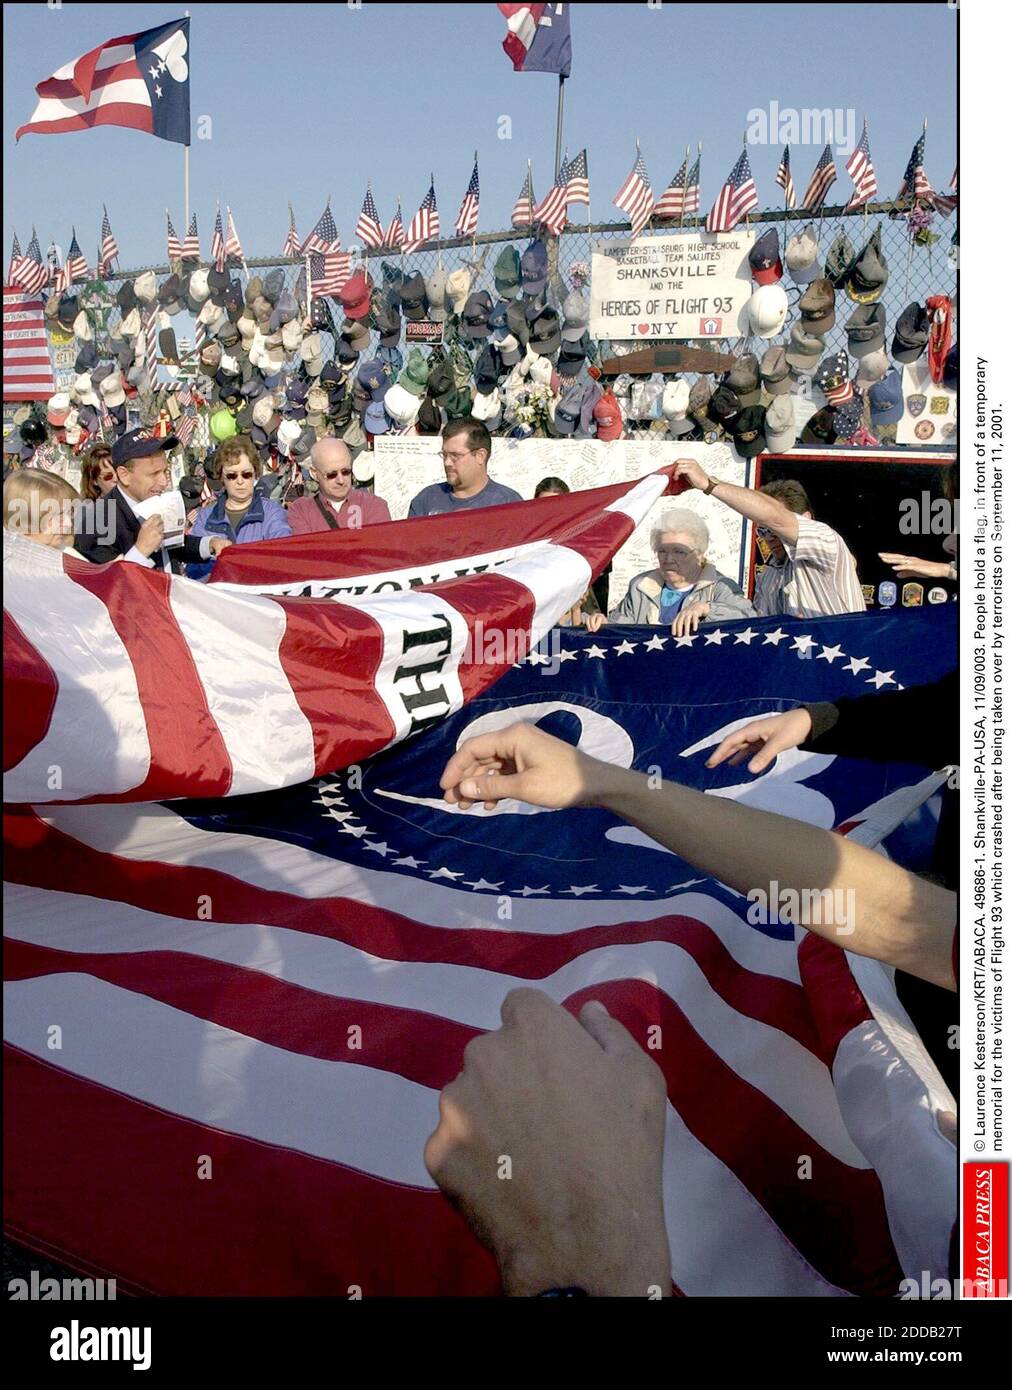 NESSUN FILM, NESSUN VIDEO, NIENTE TV, NESSUN DOCUMENTARIO - © LAURENCE KESTERSON/KRT/ABACA. 49686-1. Shankville-PA-USA, 11/09/003. La gente ha una bandiera, davanti ad un memoriale temporaneo per le vittime del volo 93 che si è schiantato dopo essere stato preso in consegna dai terroristi il 11 settembre 2001. Foto Stock